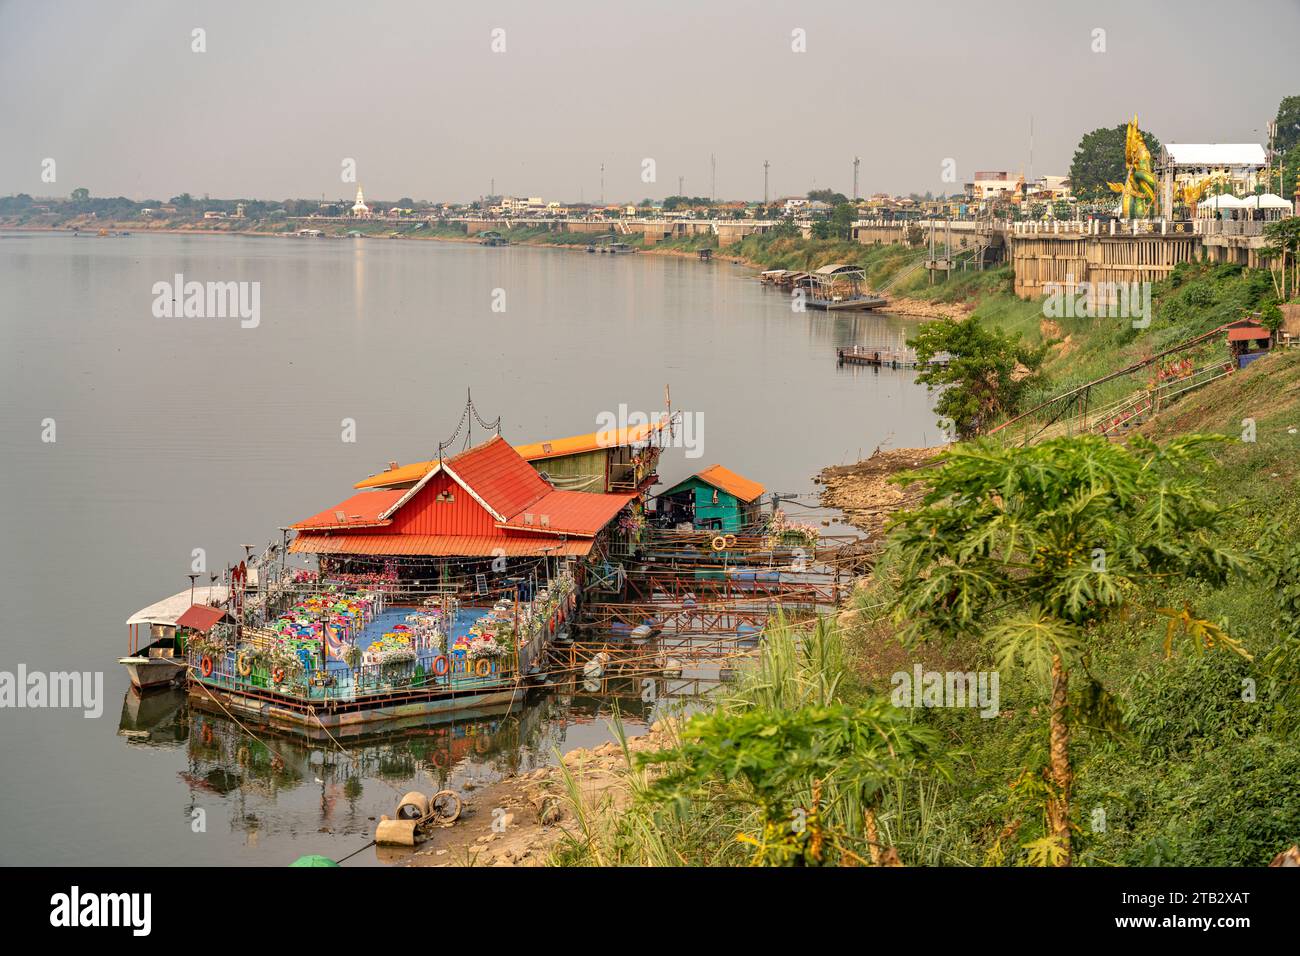 Schwimmendes Restaurant auf dem  Mekong und das Mekong-Ufer in Nong Khai, Thailand, Asien   |  Floating Restaurant on the  Mekong River and the riverf Stock Photo